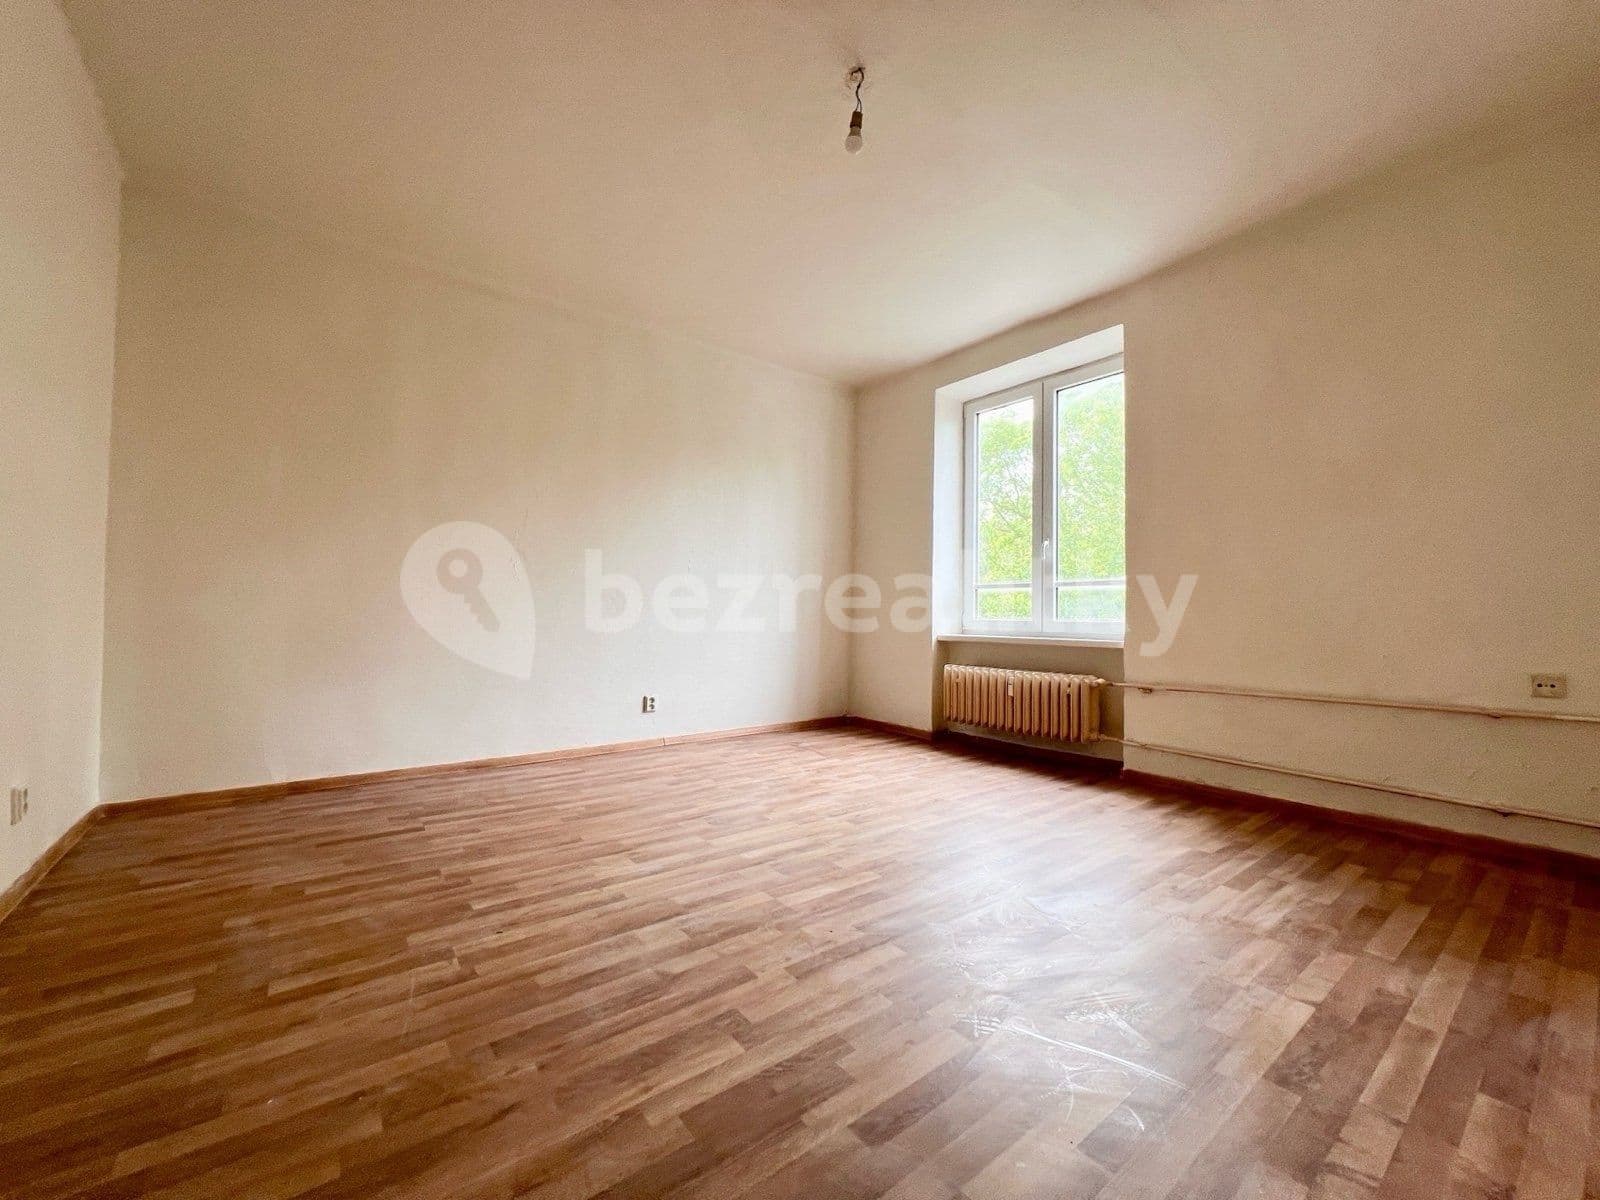 3 bedroom flat to rent, 76 m², náměstí Vítězslava Nováka, Ostrava, Moravskoslezský Region